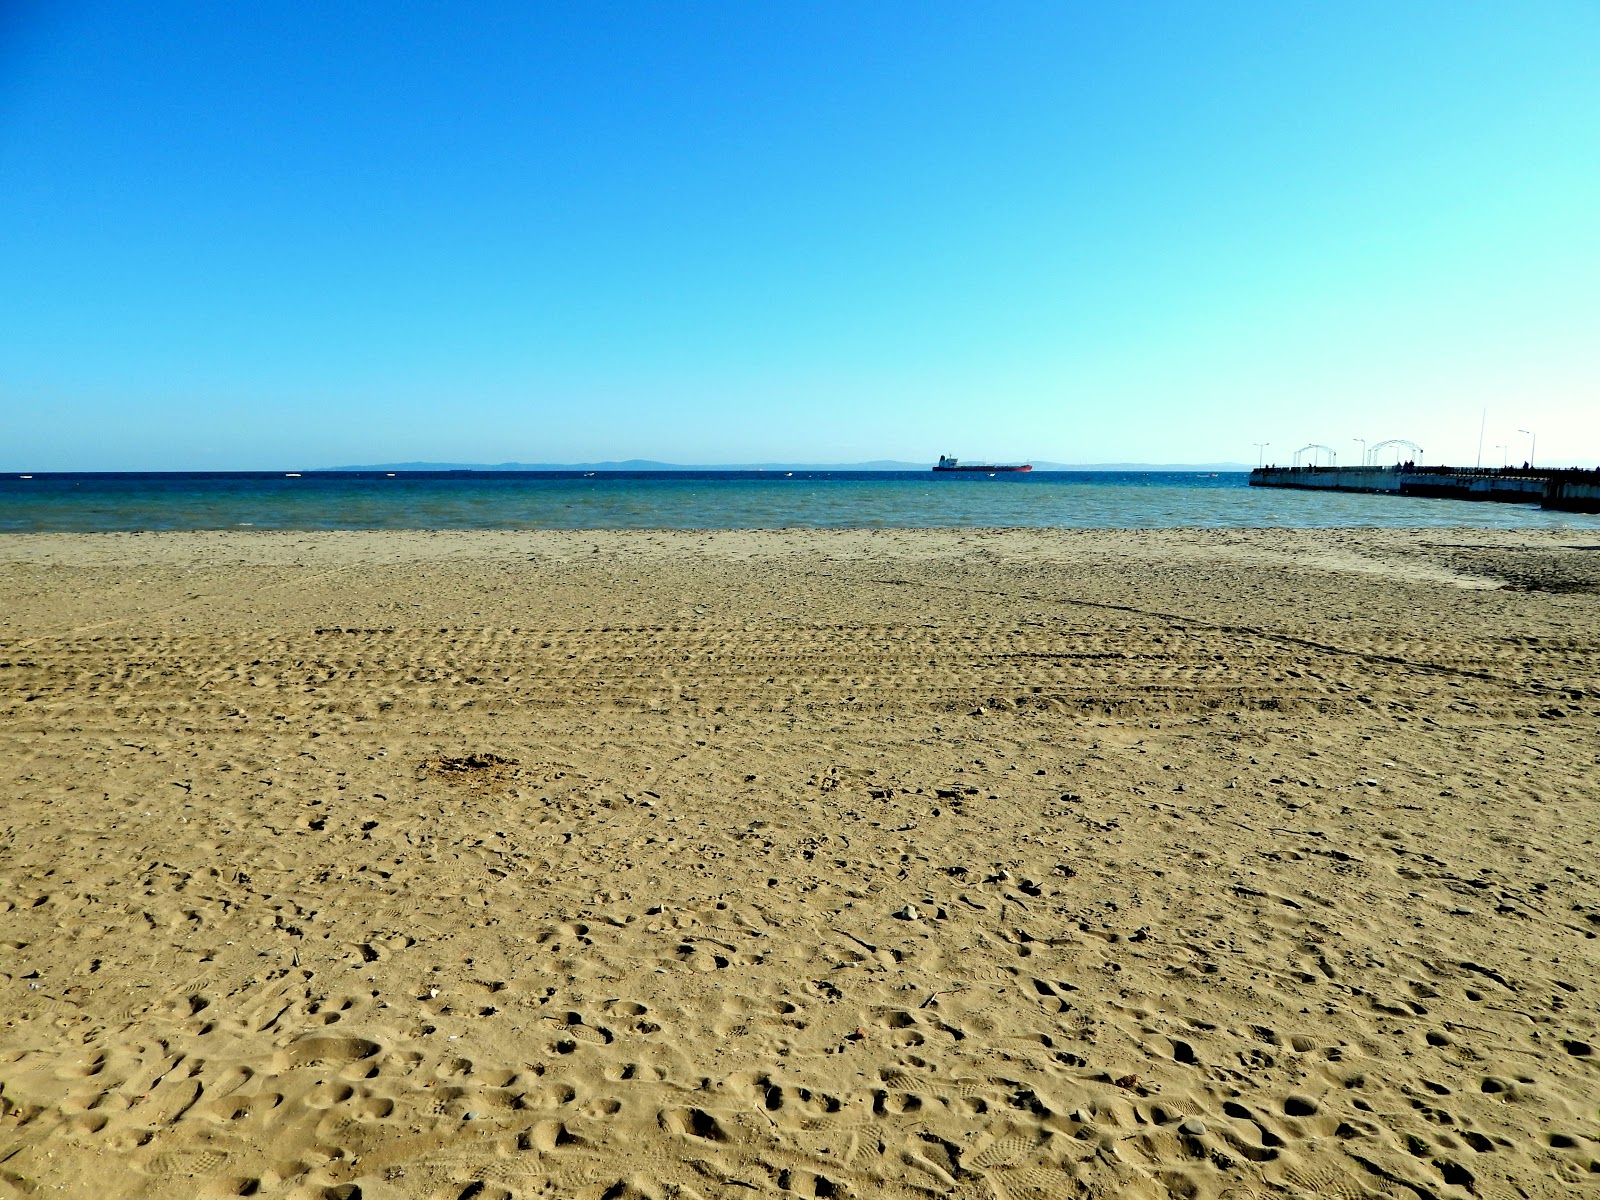 Sarkoy beach'in fotoğrafı kahverengi kum yüzey ile